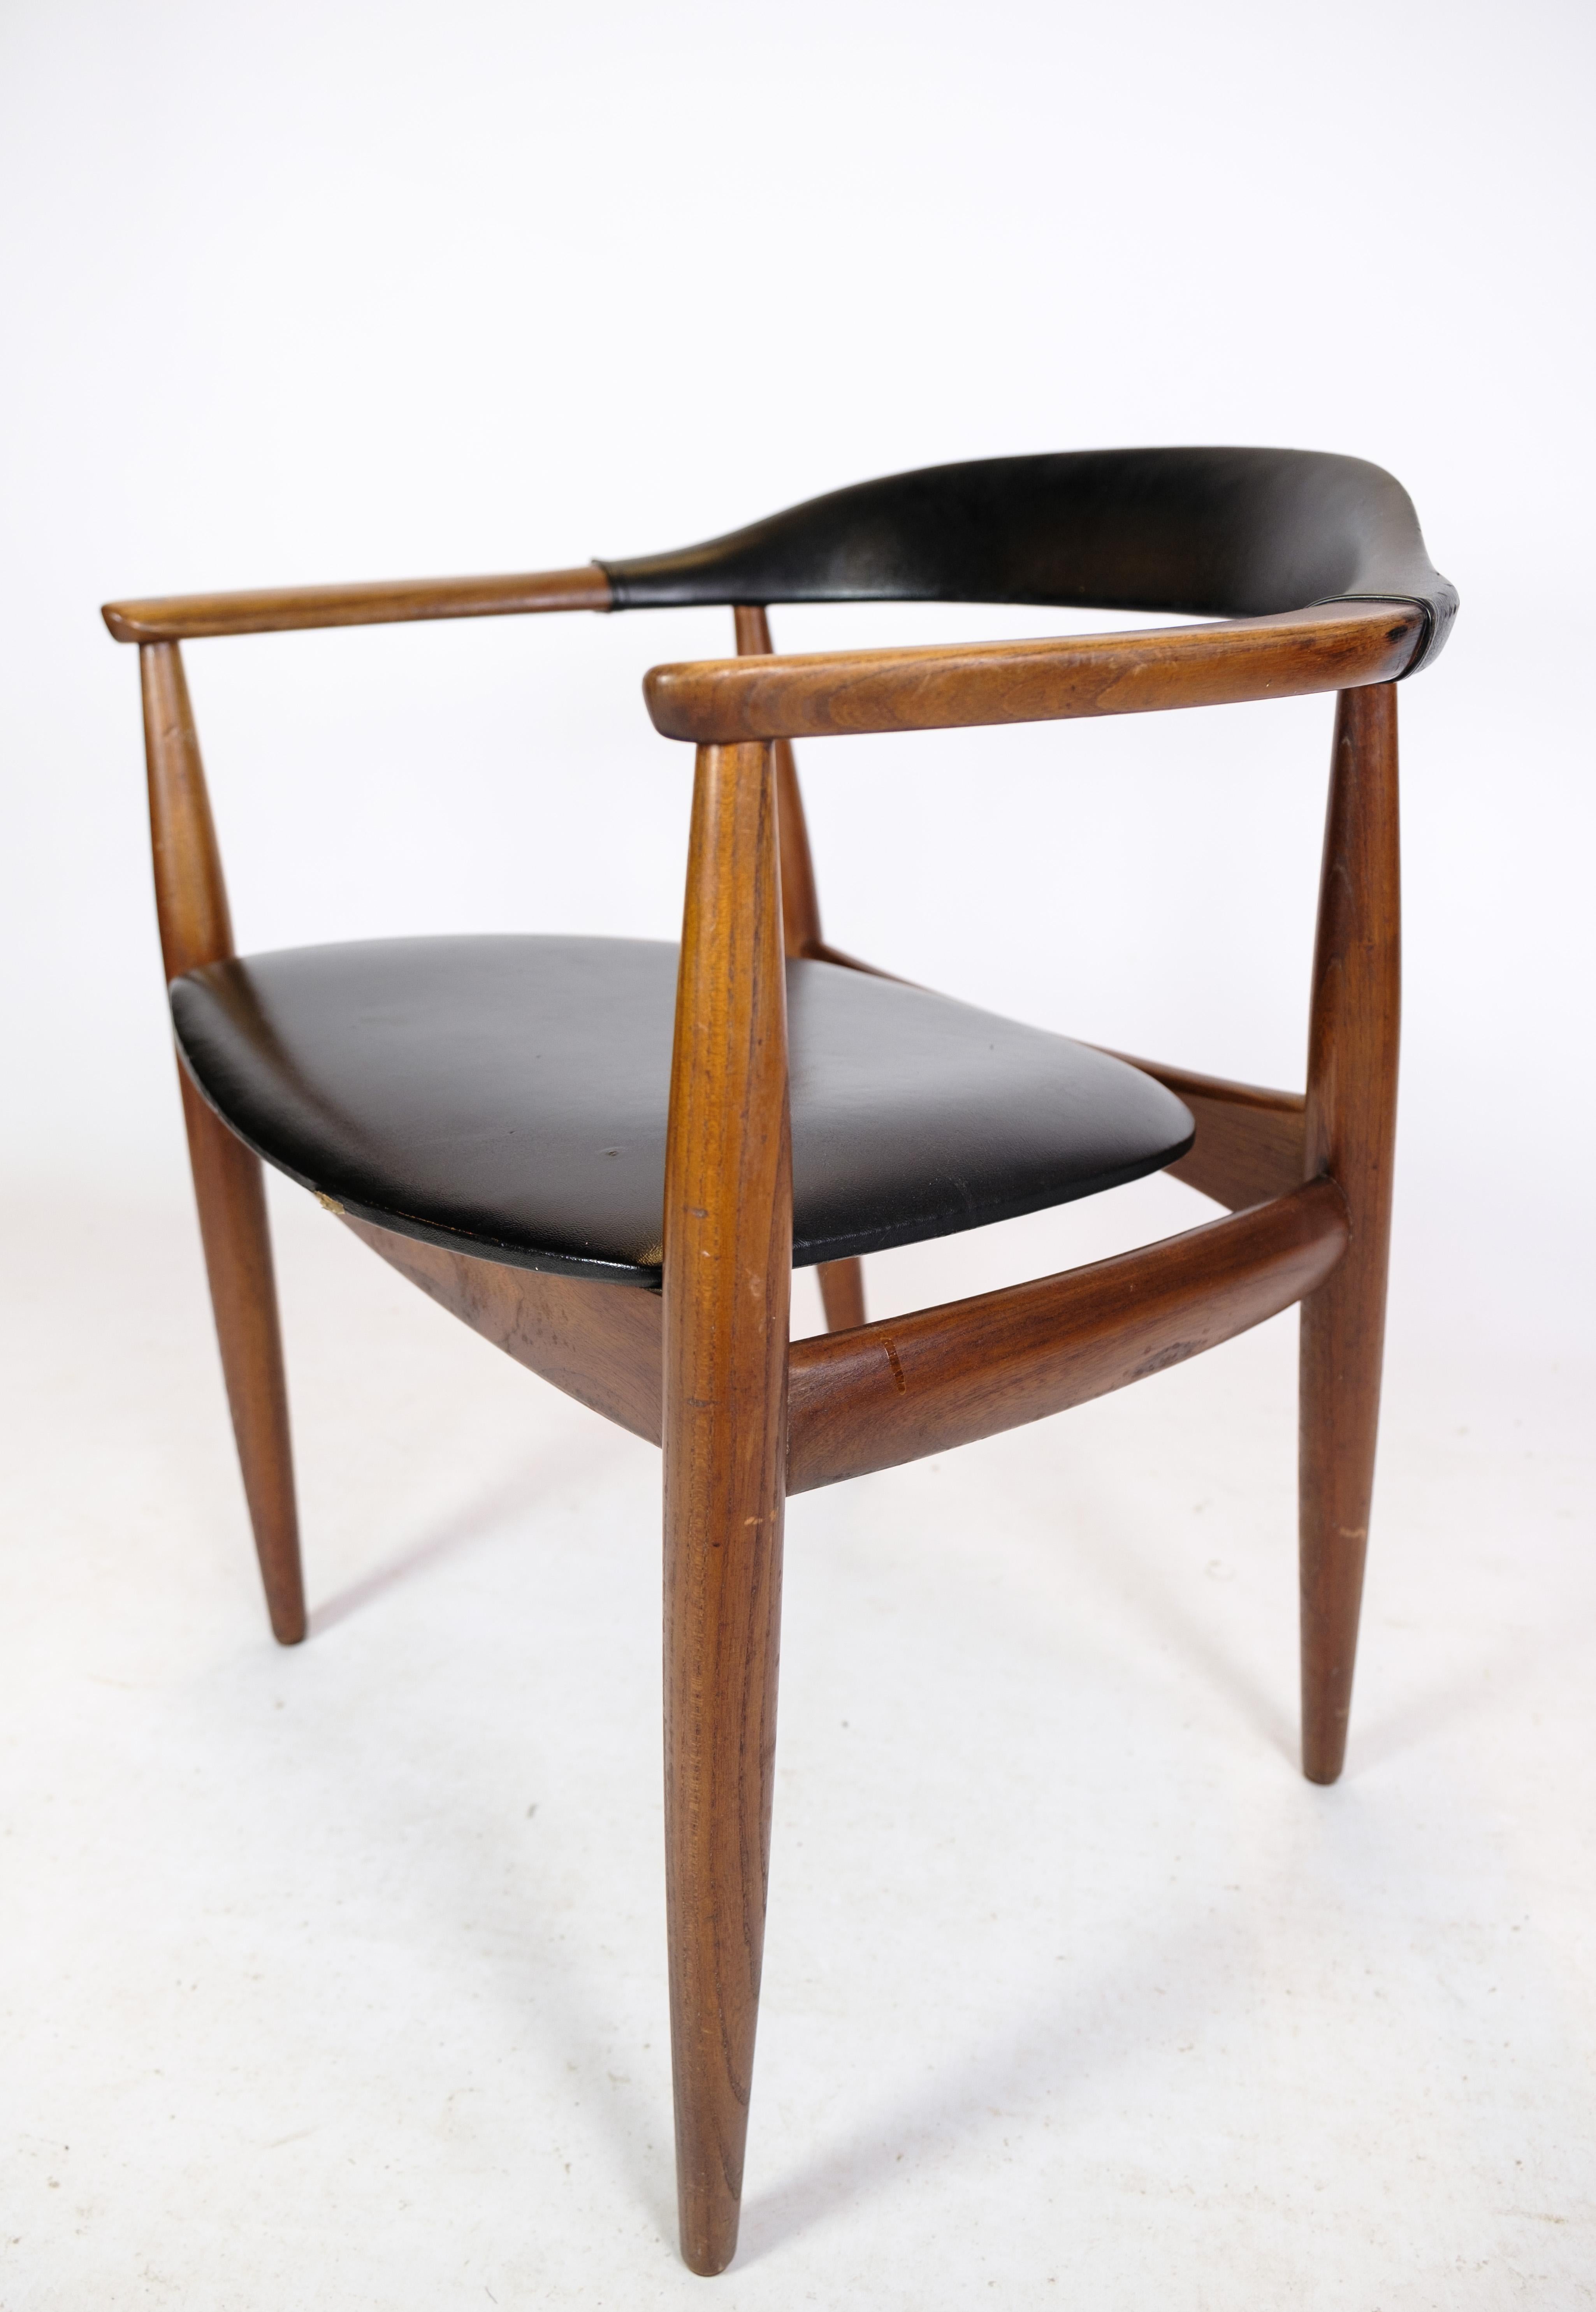 Scandinavian Modern Armchair in Teak Wood and Black Leather by Illum Wikkelsø & Niels Eilersen 1960 For Sale